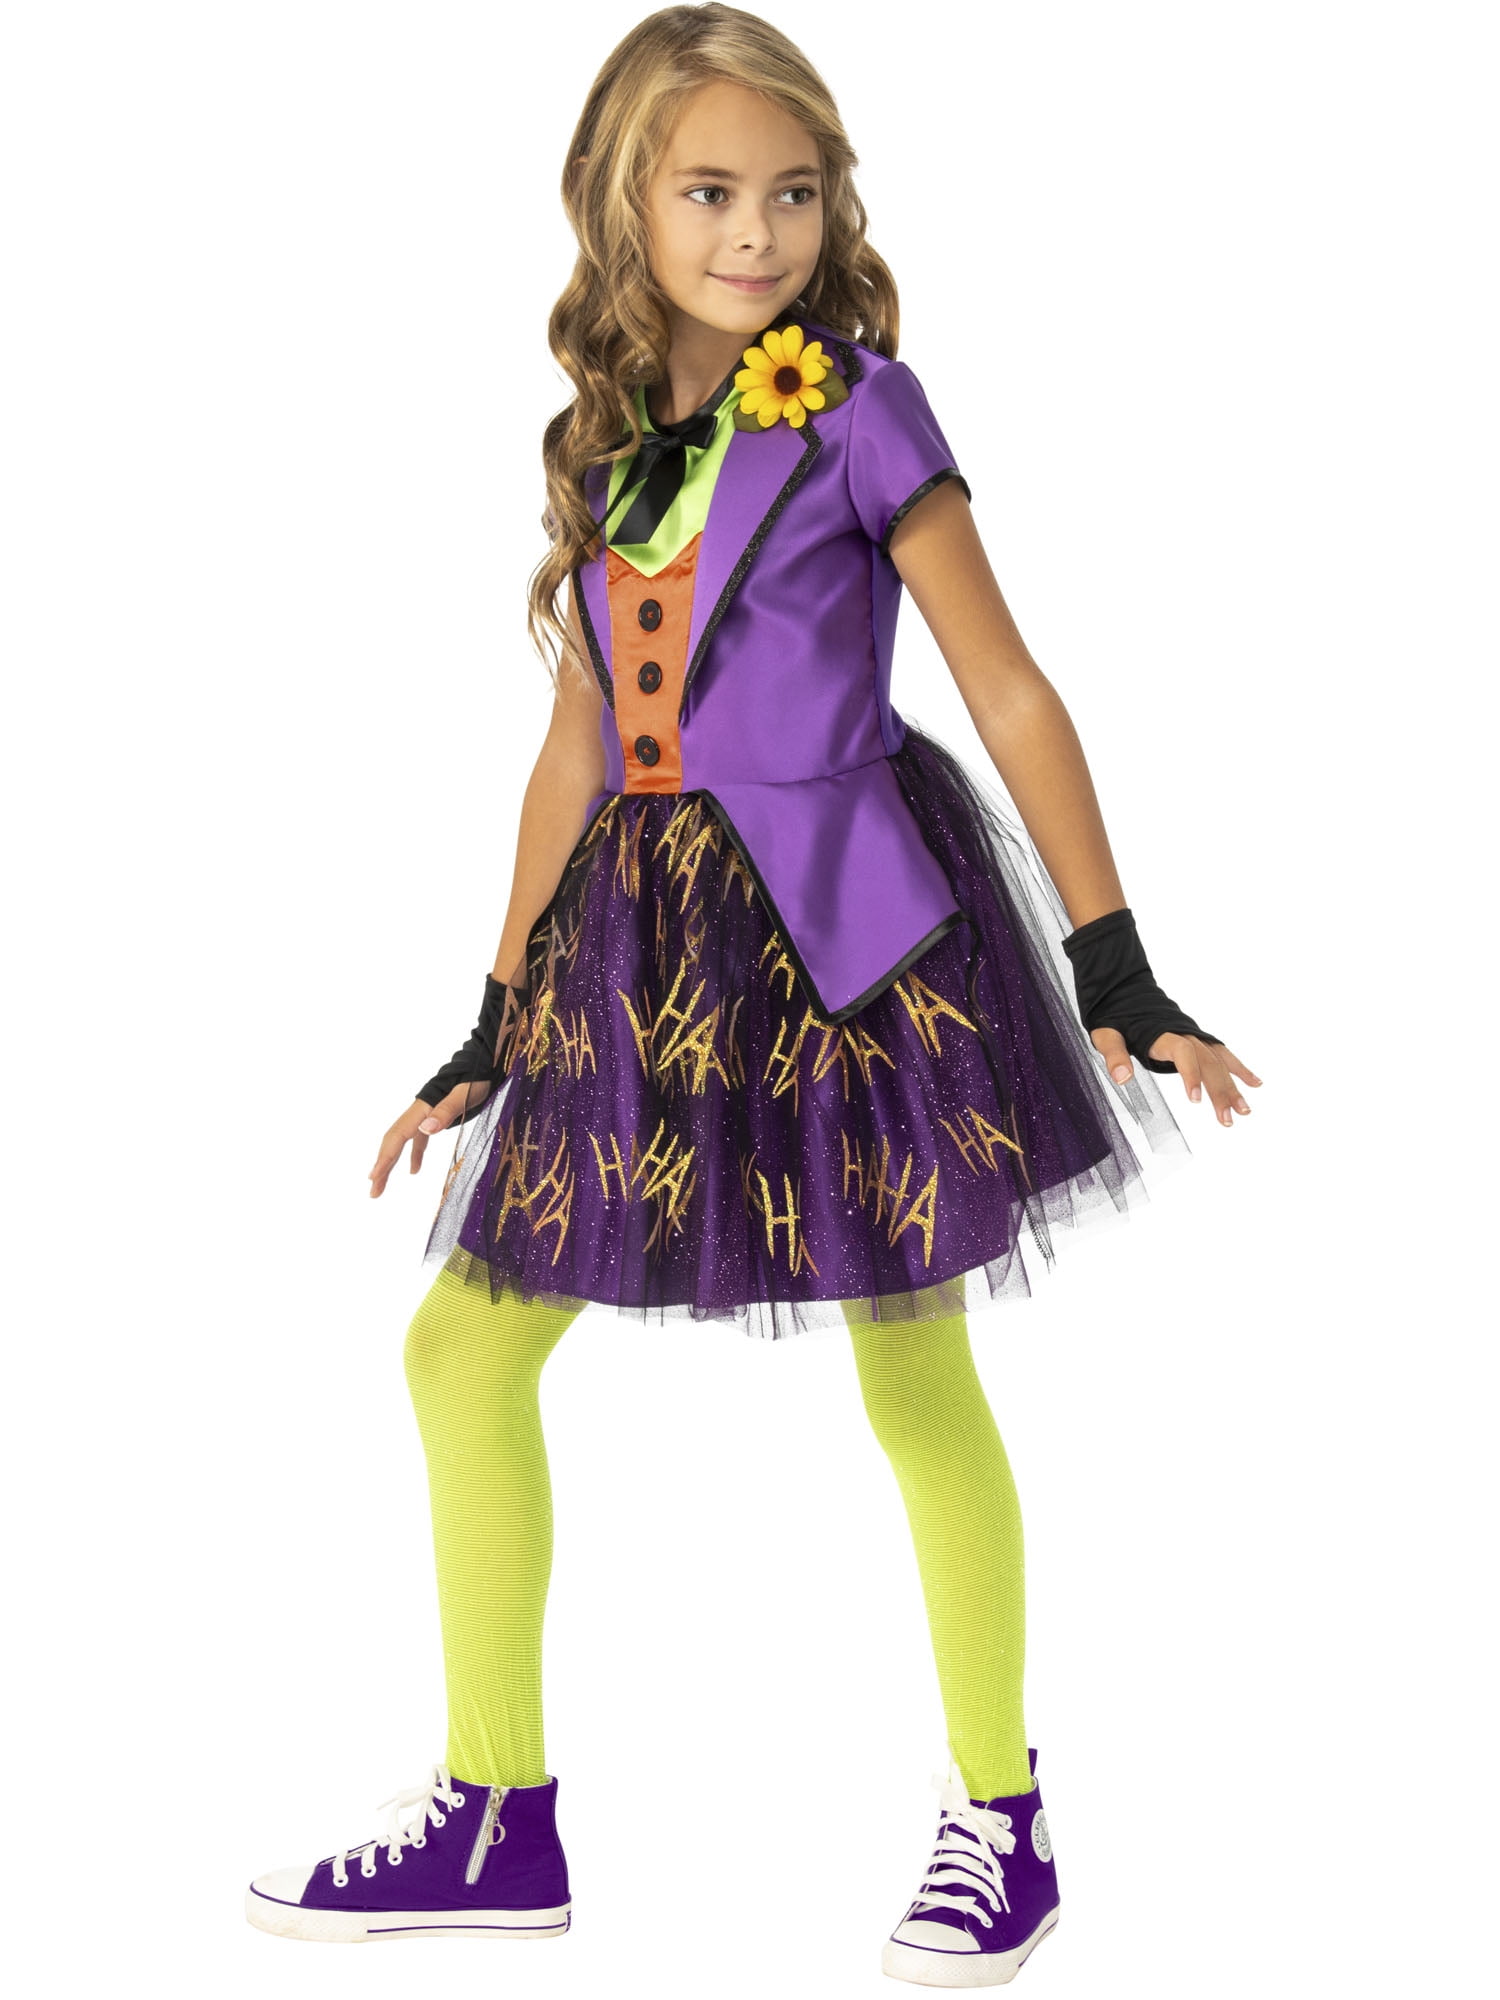 Picture of Ruby Slipper 656550 DC Super Villains Joker Girl Costume, Medium